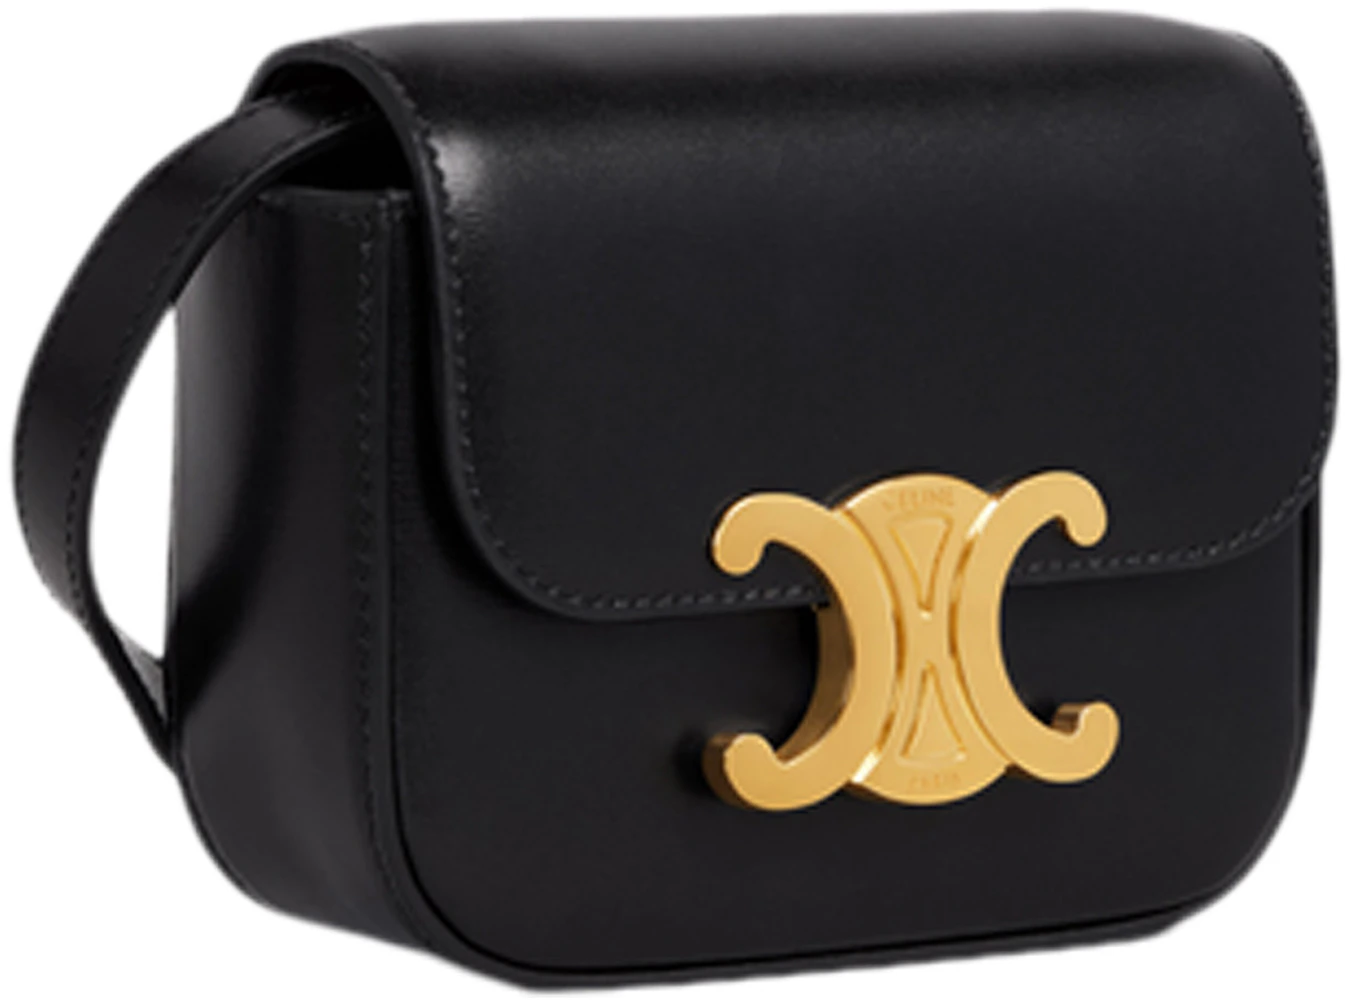 Celine Triomphe Shoulder Bag Mini Black in Shiny Calfskin Leather